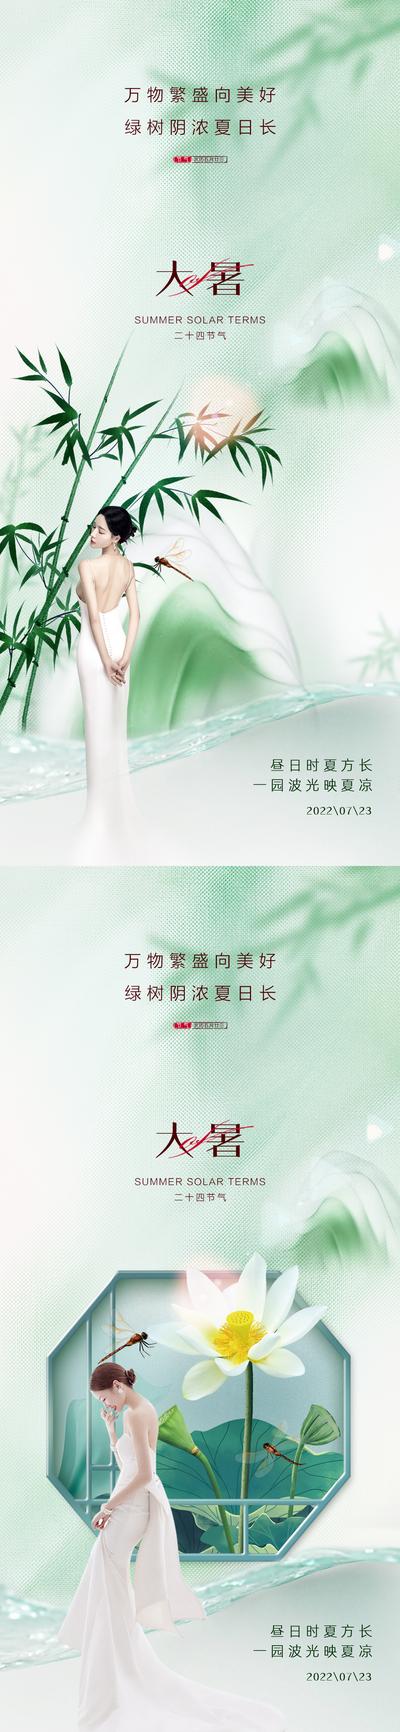 南门网 广告 海报 地产 大暑 医美 人物 荷花 竹叶 系列 小暑